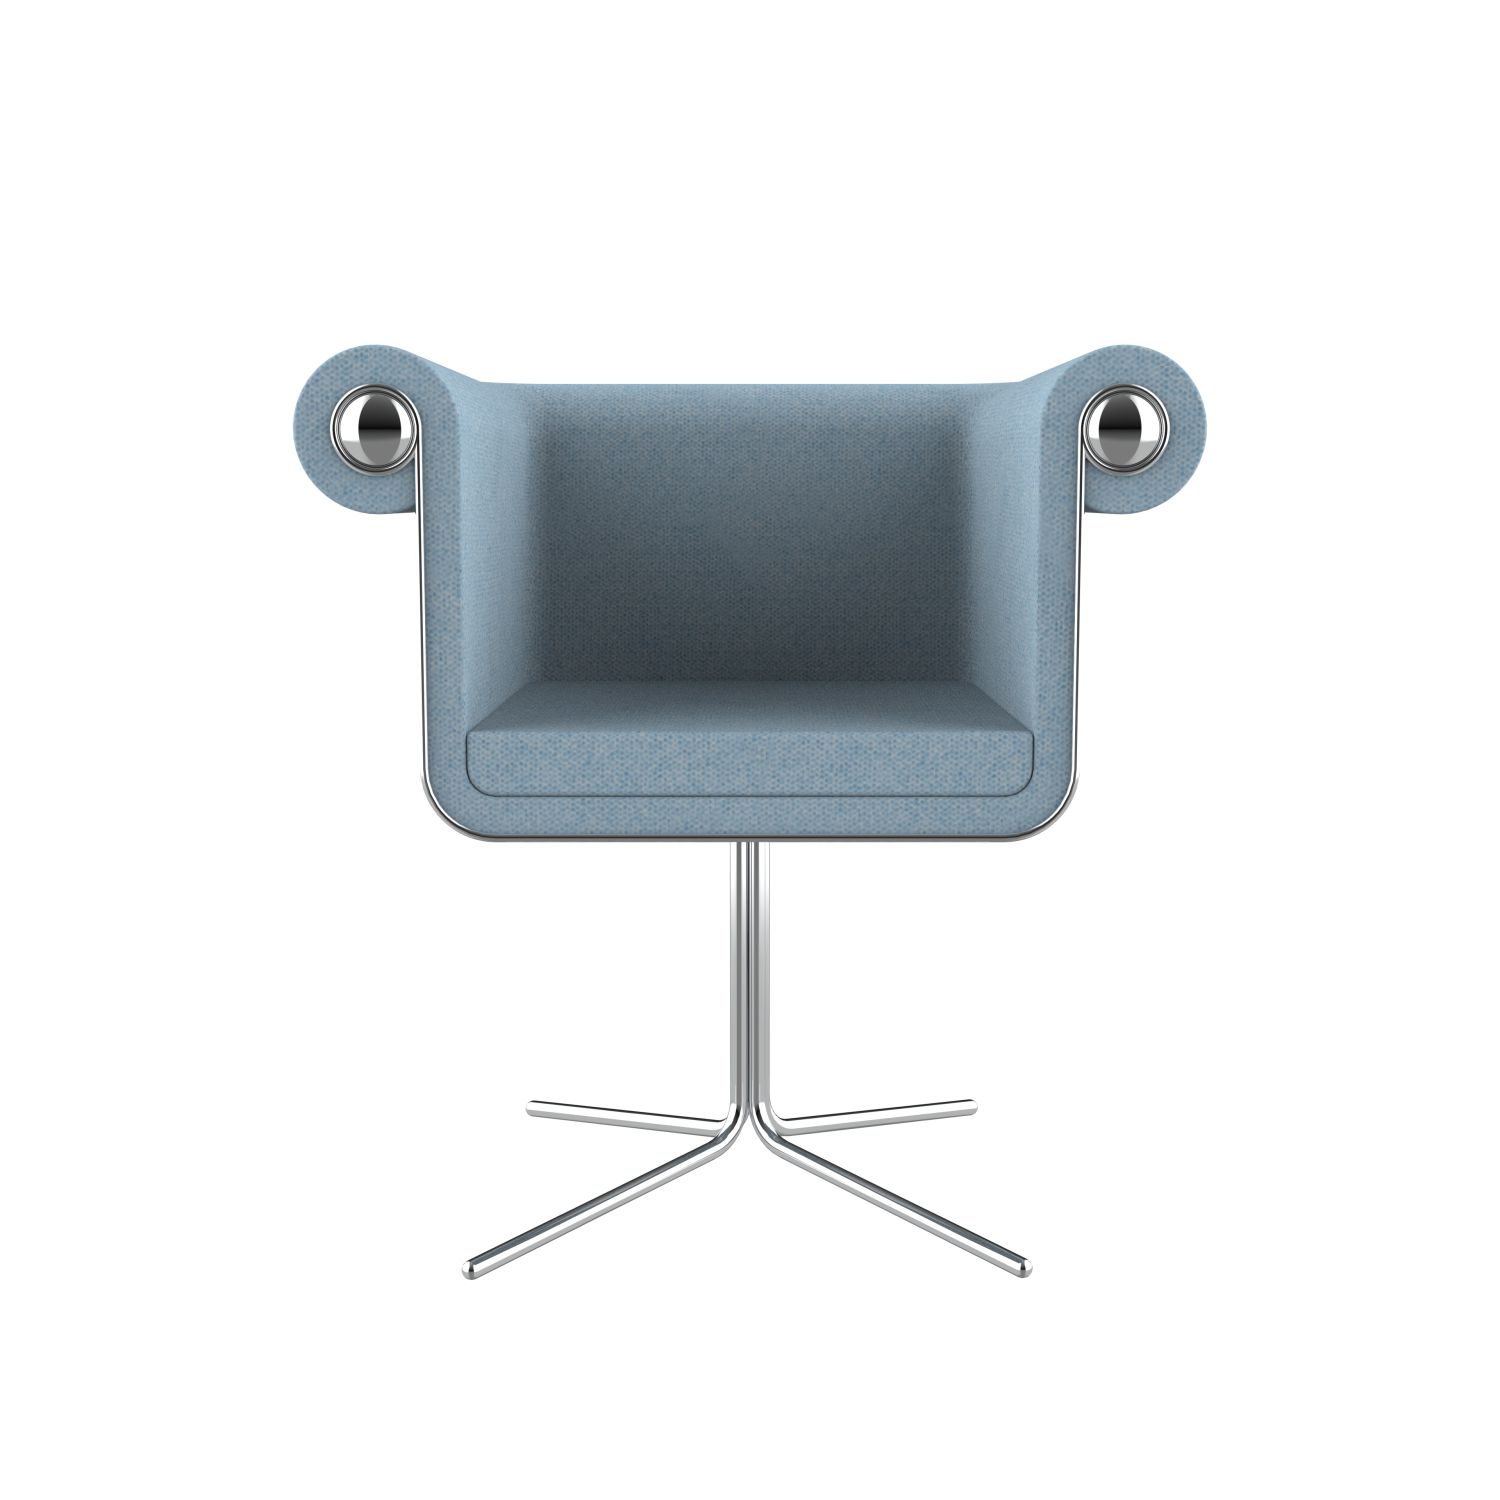 lensvelt baranowitz kronenberg new chesterfield chair moss pastel blue 40 price level 2 glossy chrome hard leg ends